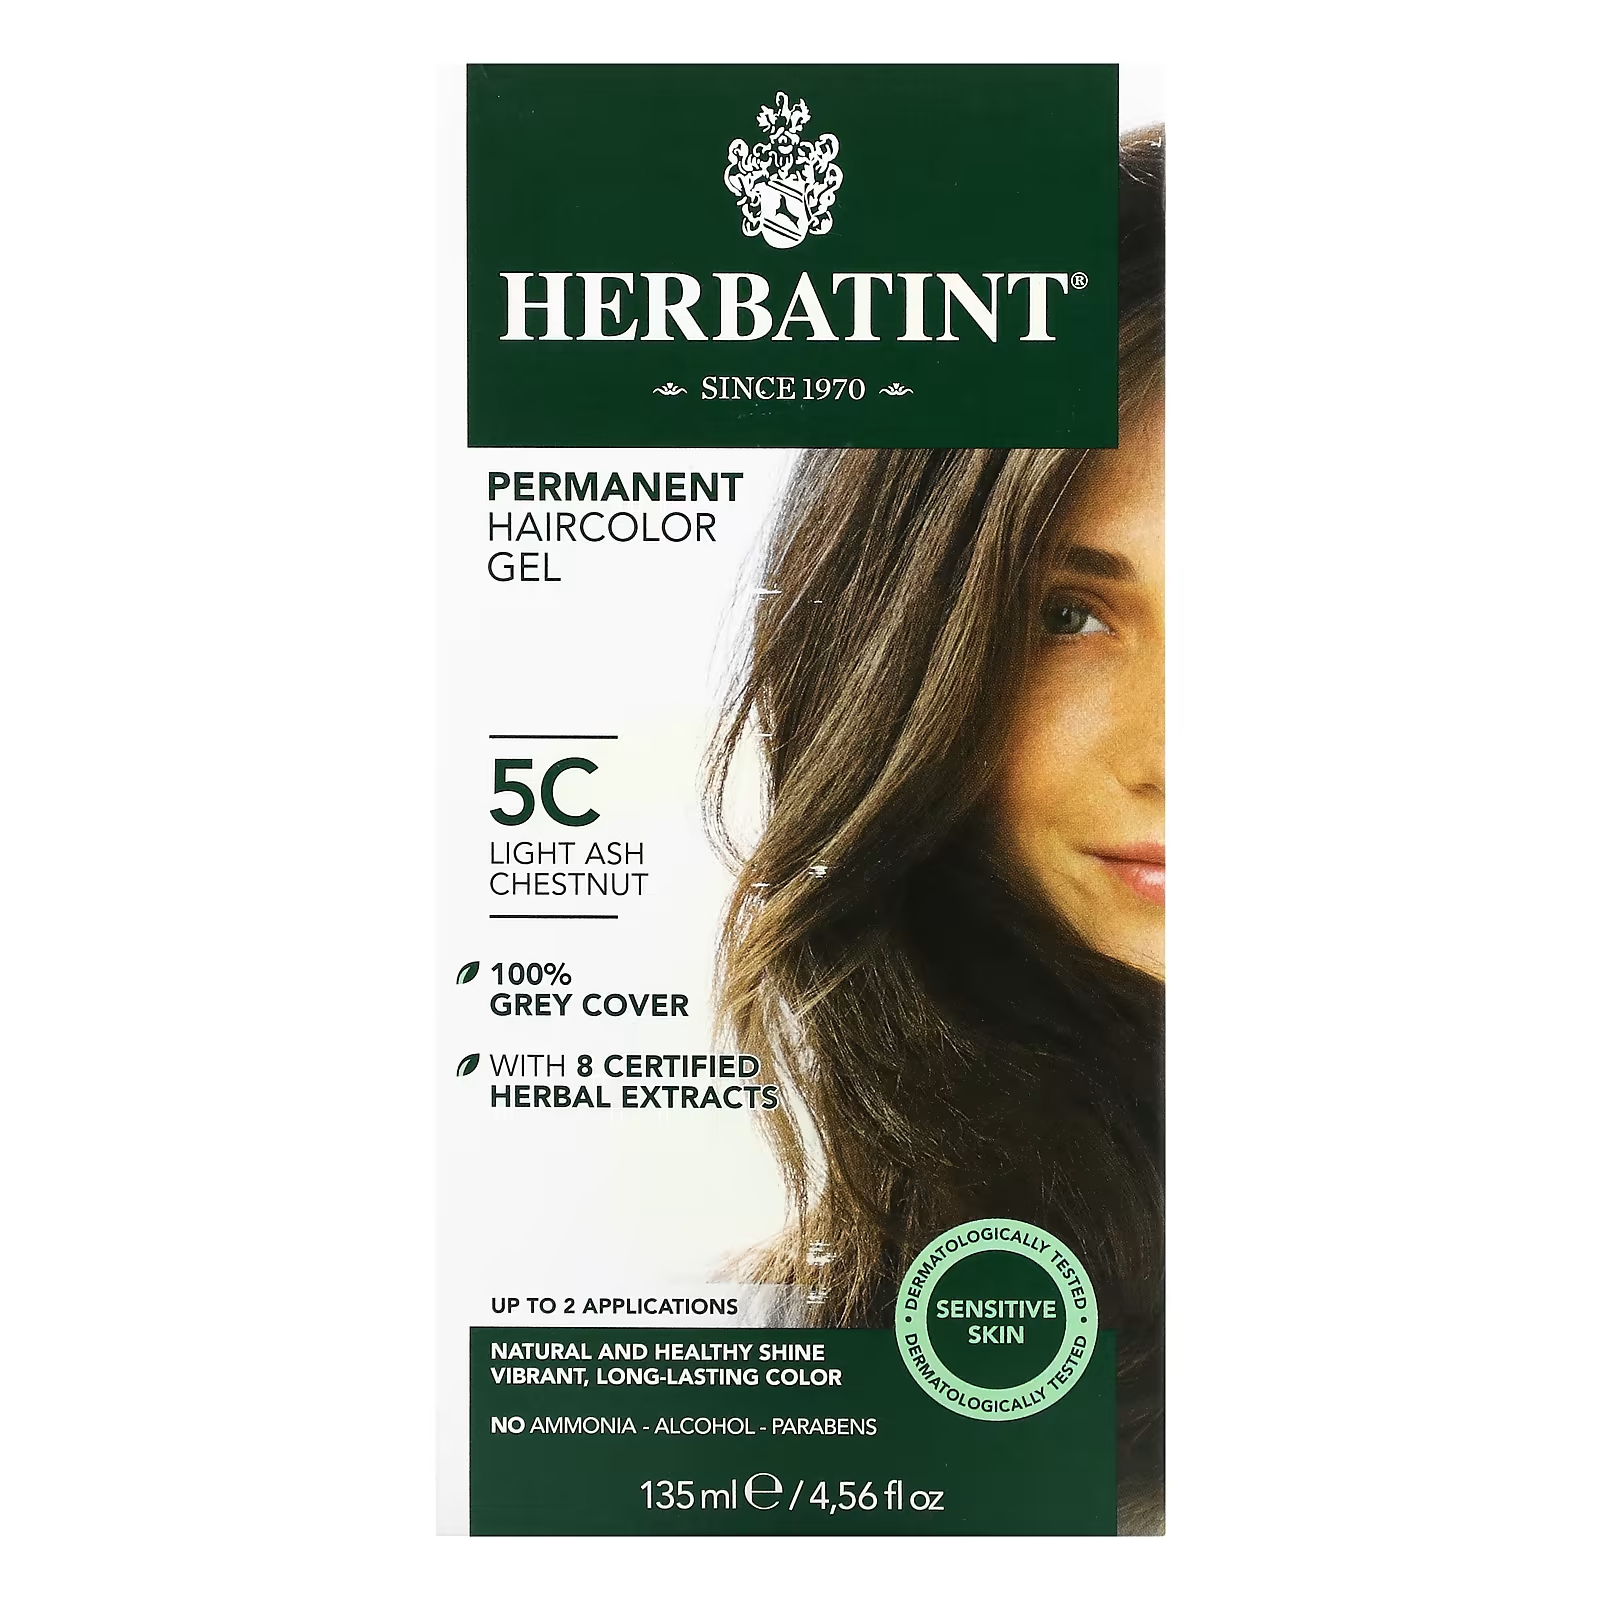 Перманентная гель-краска для волос Herbatint 5C светлый пепельный каштан, 135 мл herbatint перманентная гель краска для волос 5c светлый пепельный каштан 135 мл 4 56 жидк унции